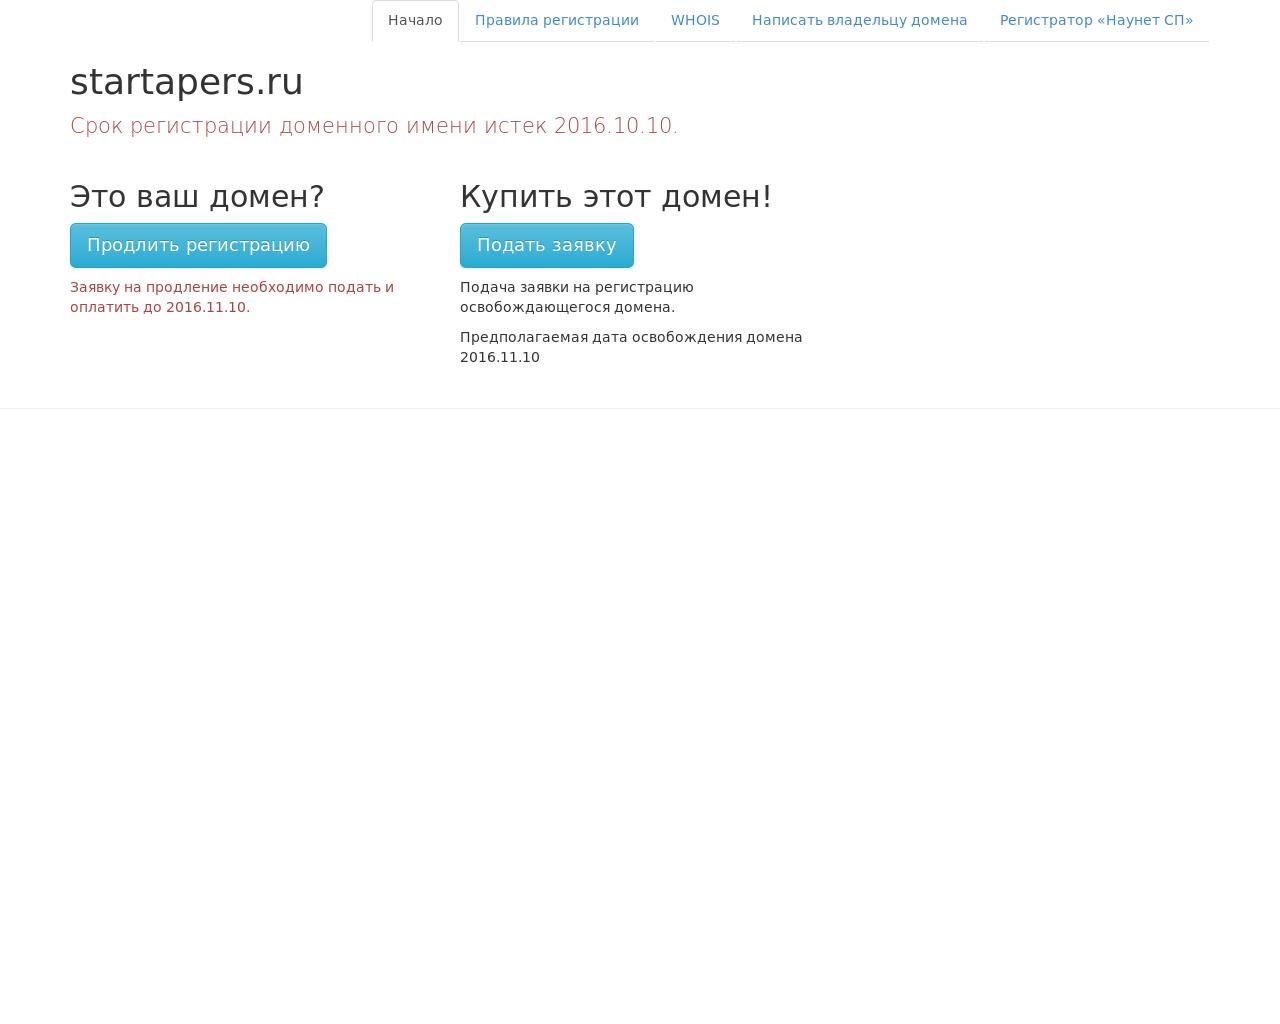 Изображение сайта startapers.ru в разрешении 1280x1024